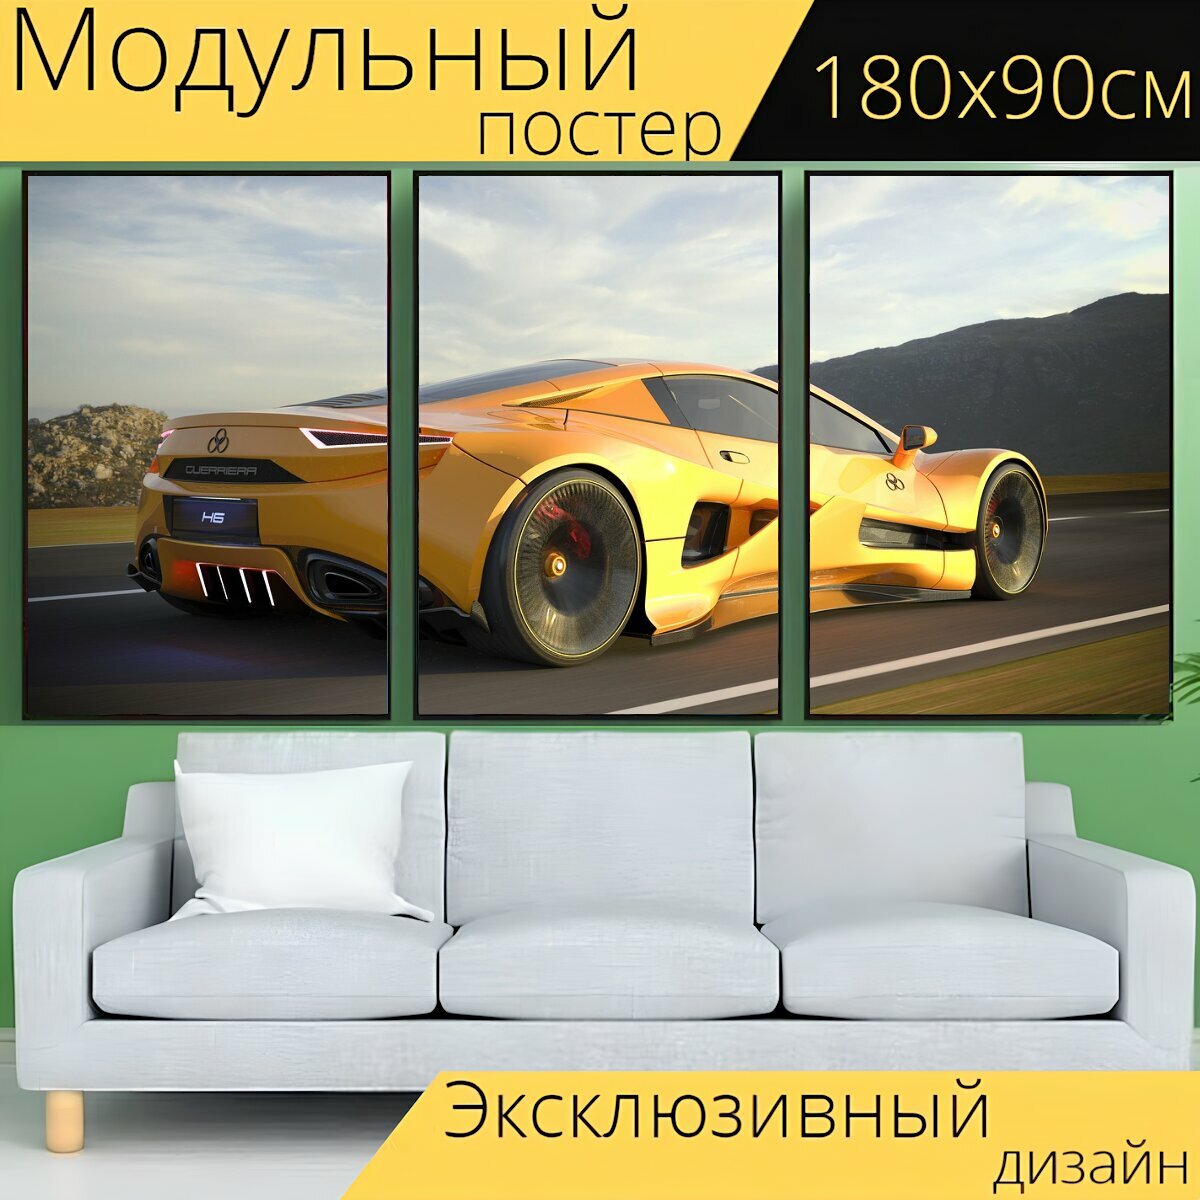 Модульный постер "Машина, быстрая машина, спортивная машина" 180 x 90 см. для интерьера